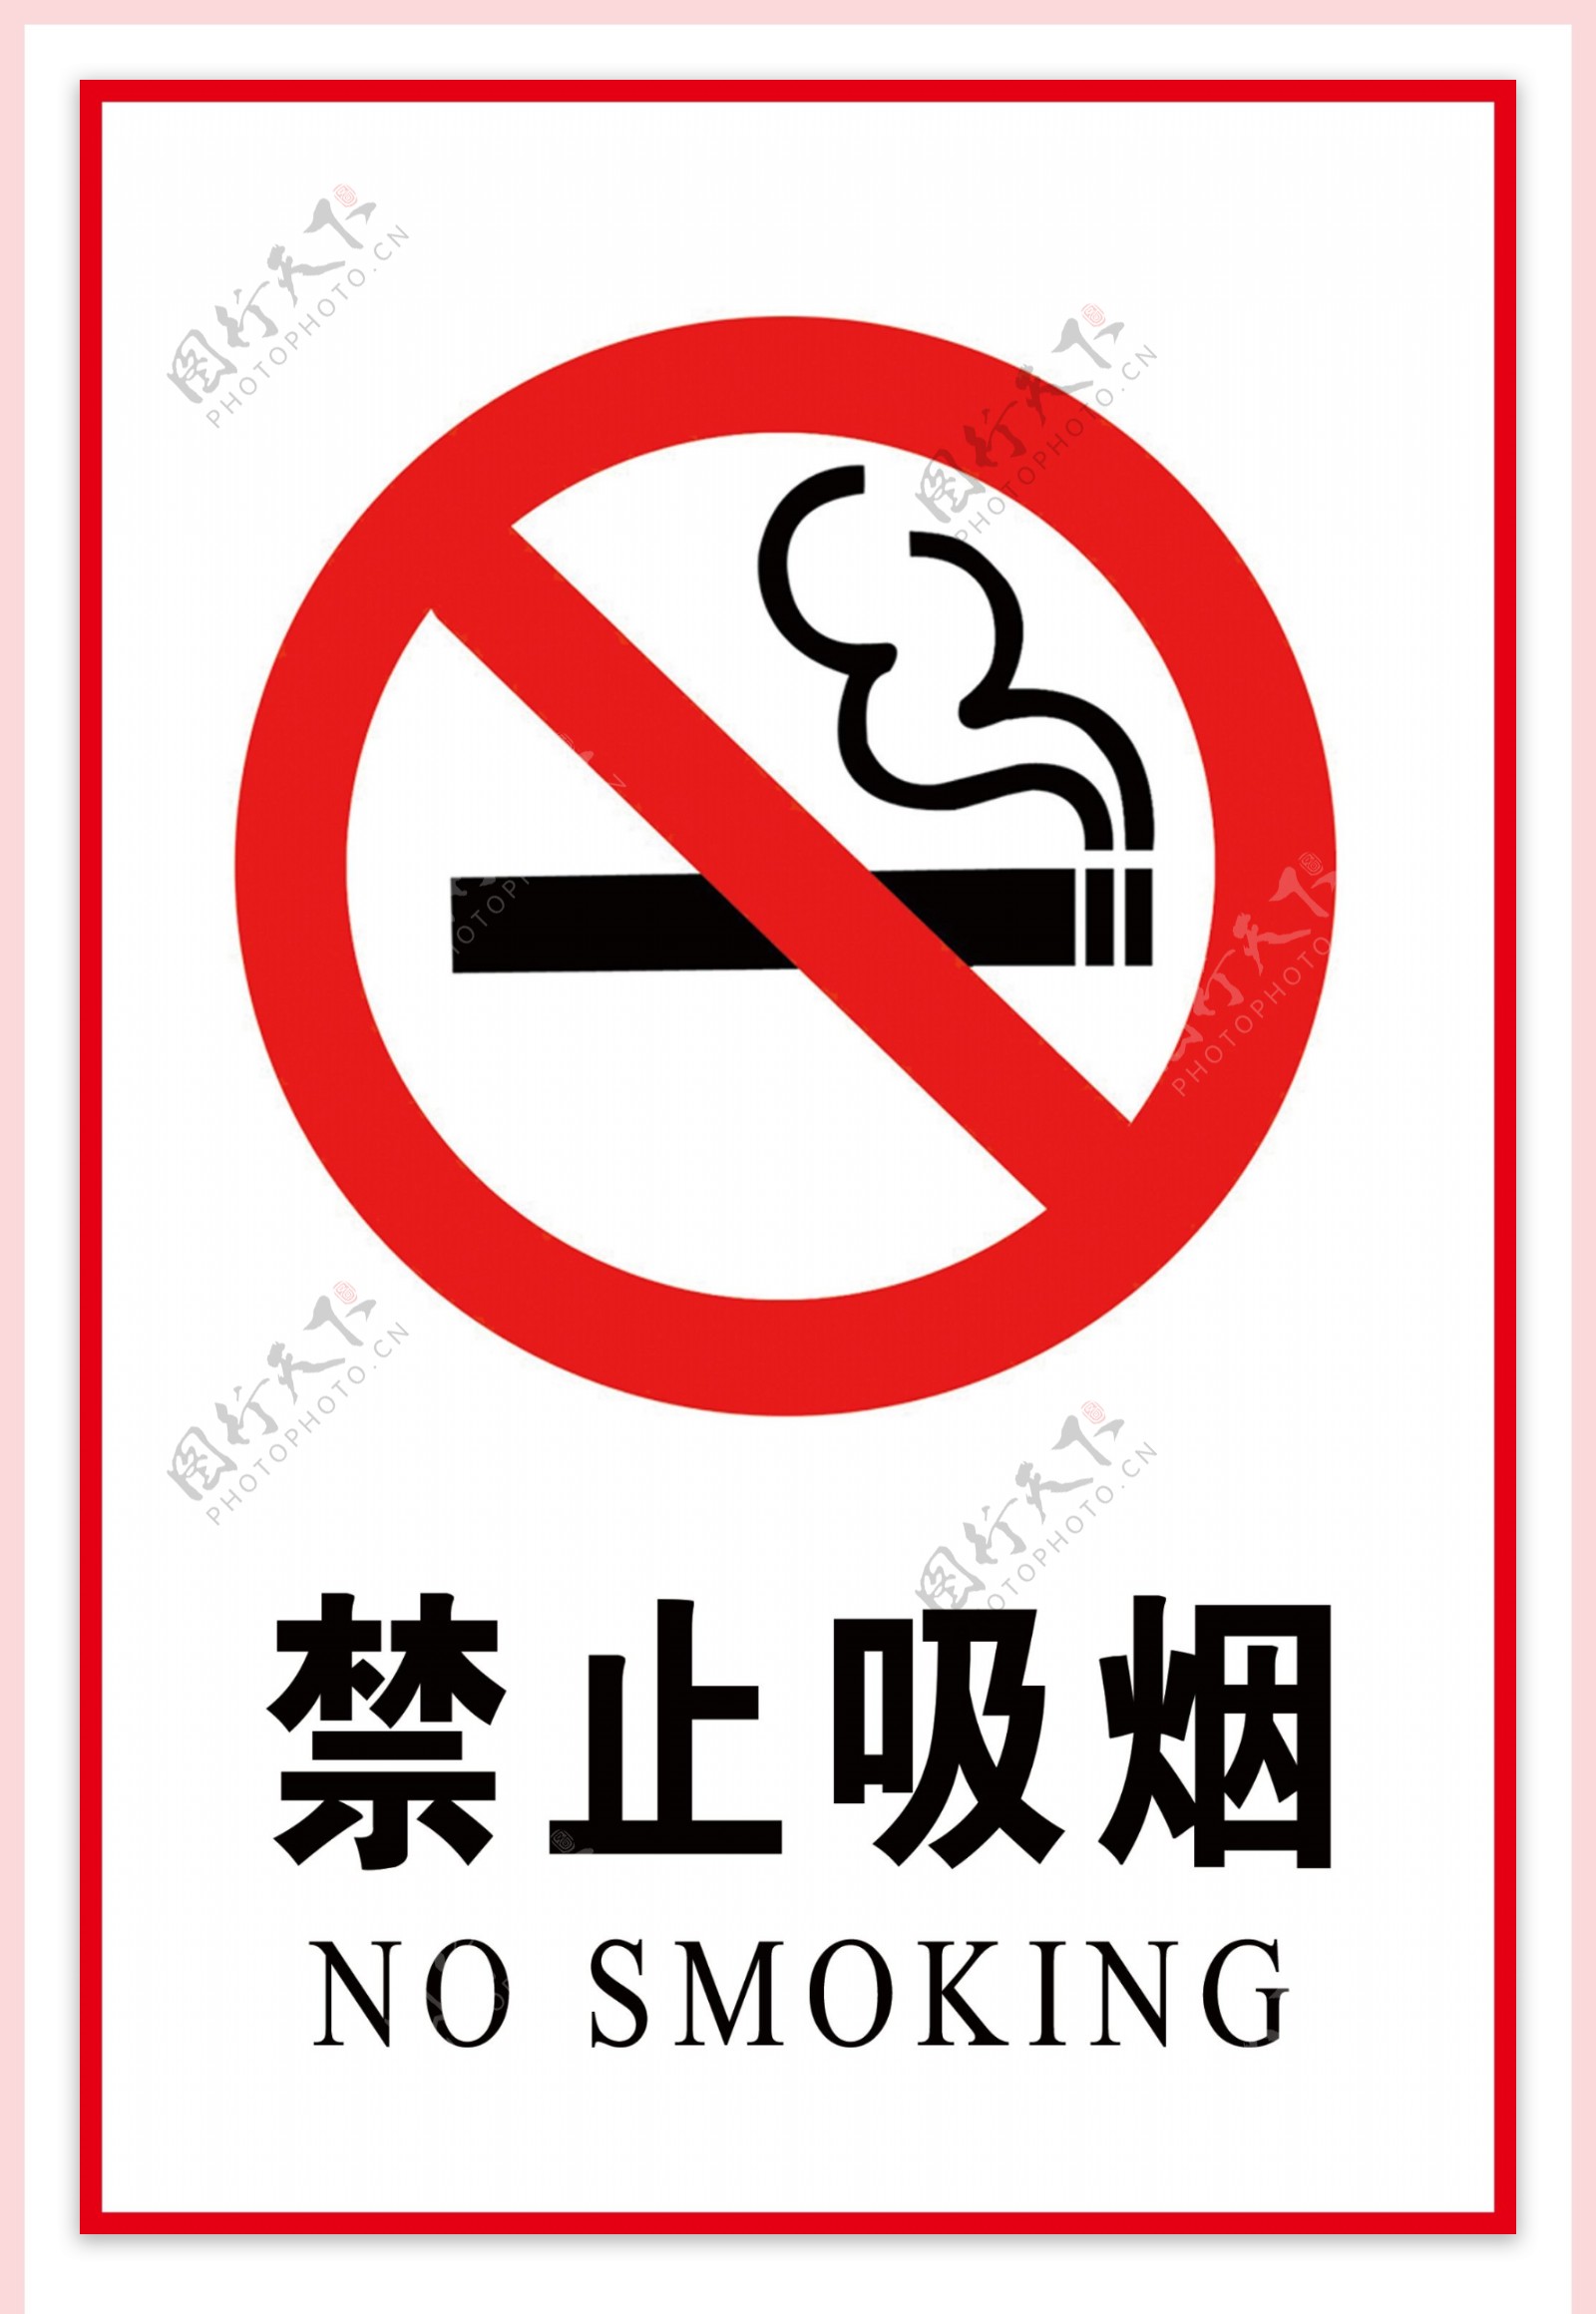 禁止吸烟和吸烟区